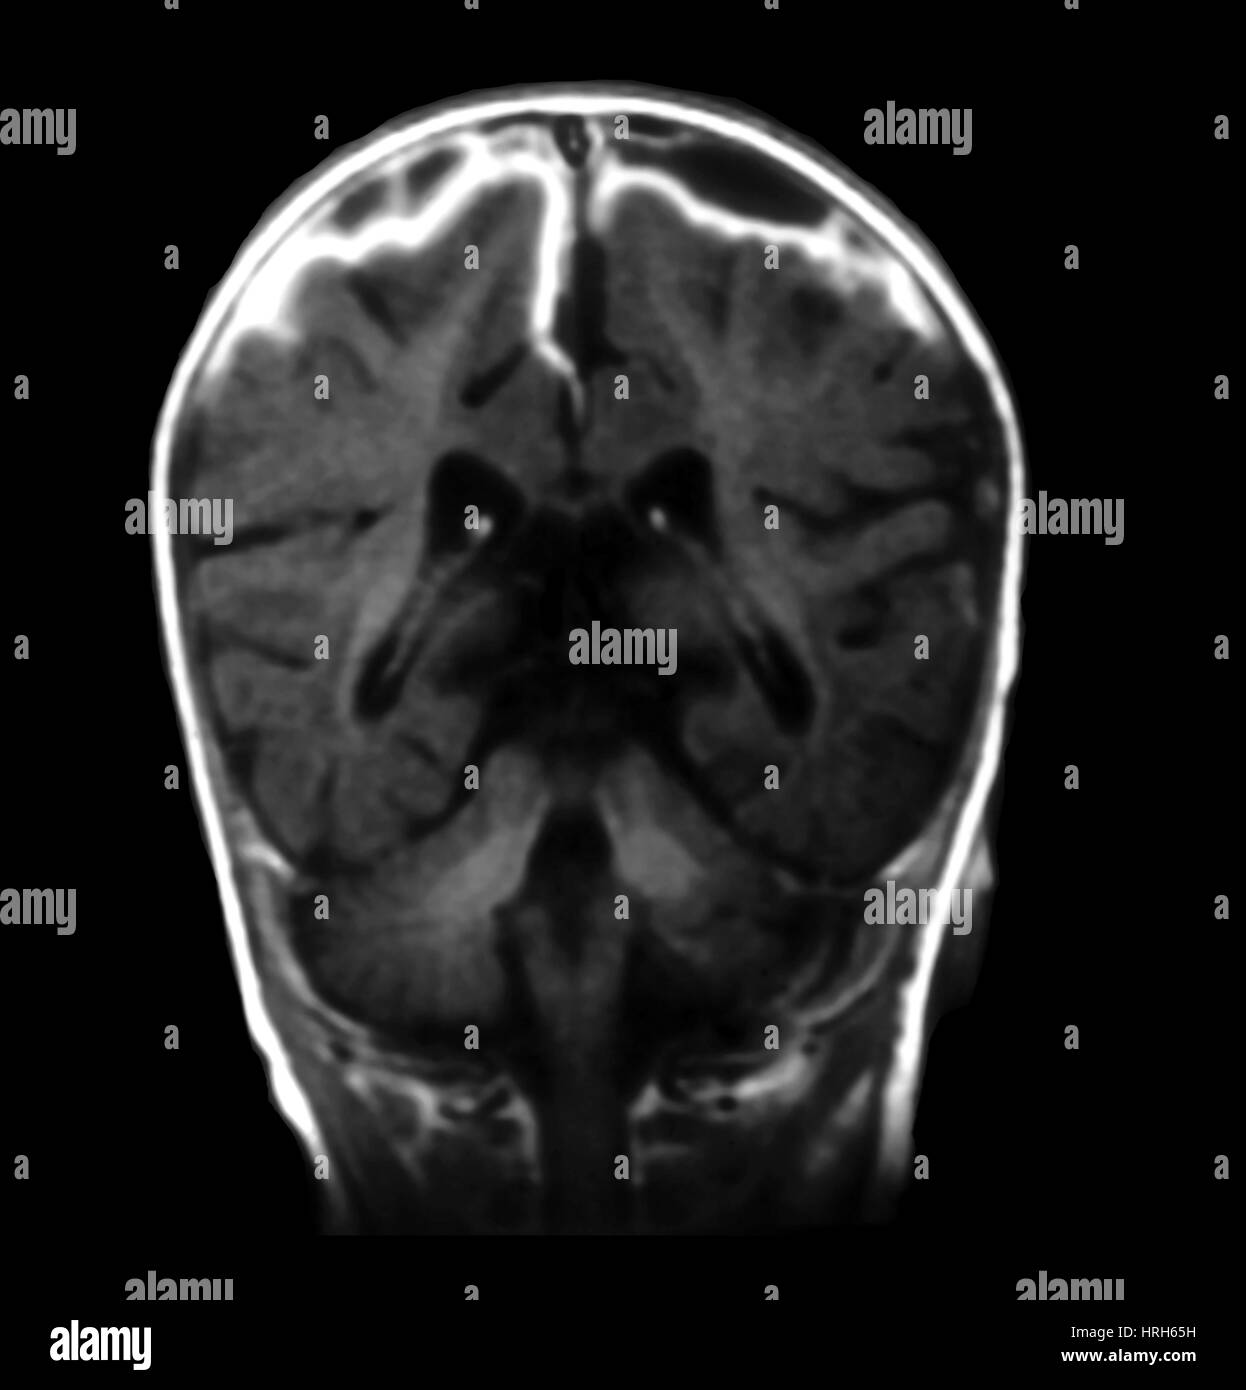 Mri of meningitis Black and White Stock Photos & Images - Alamy